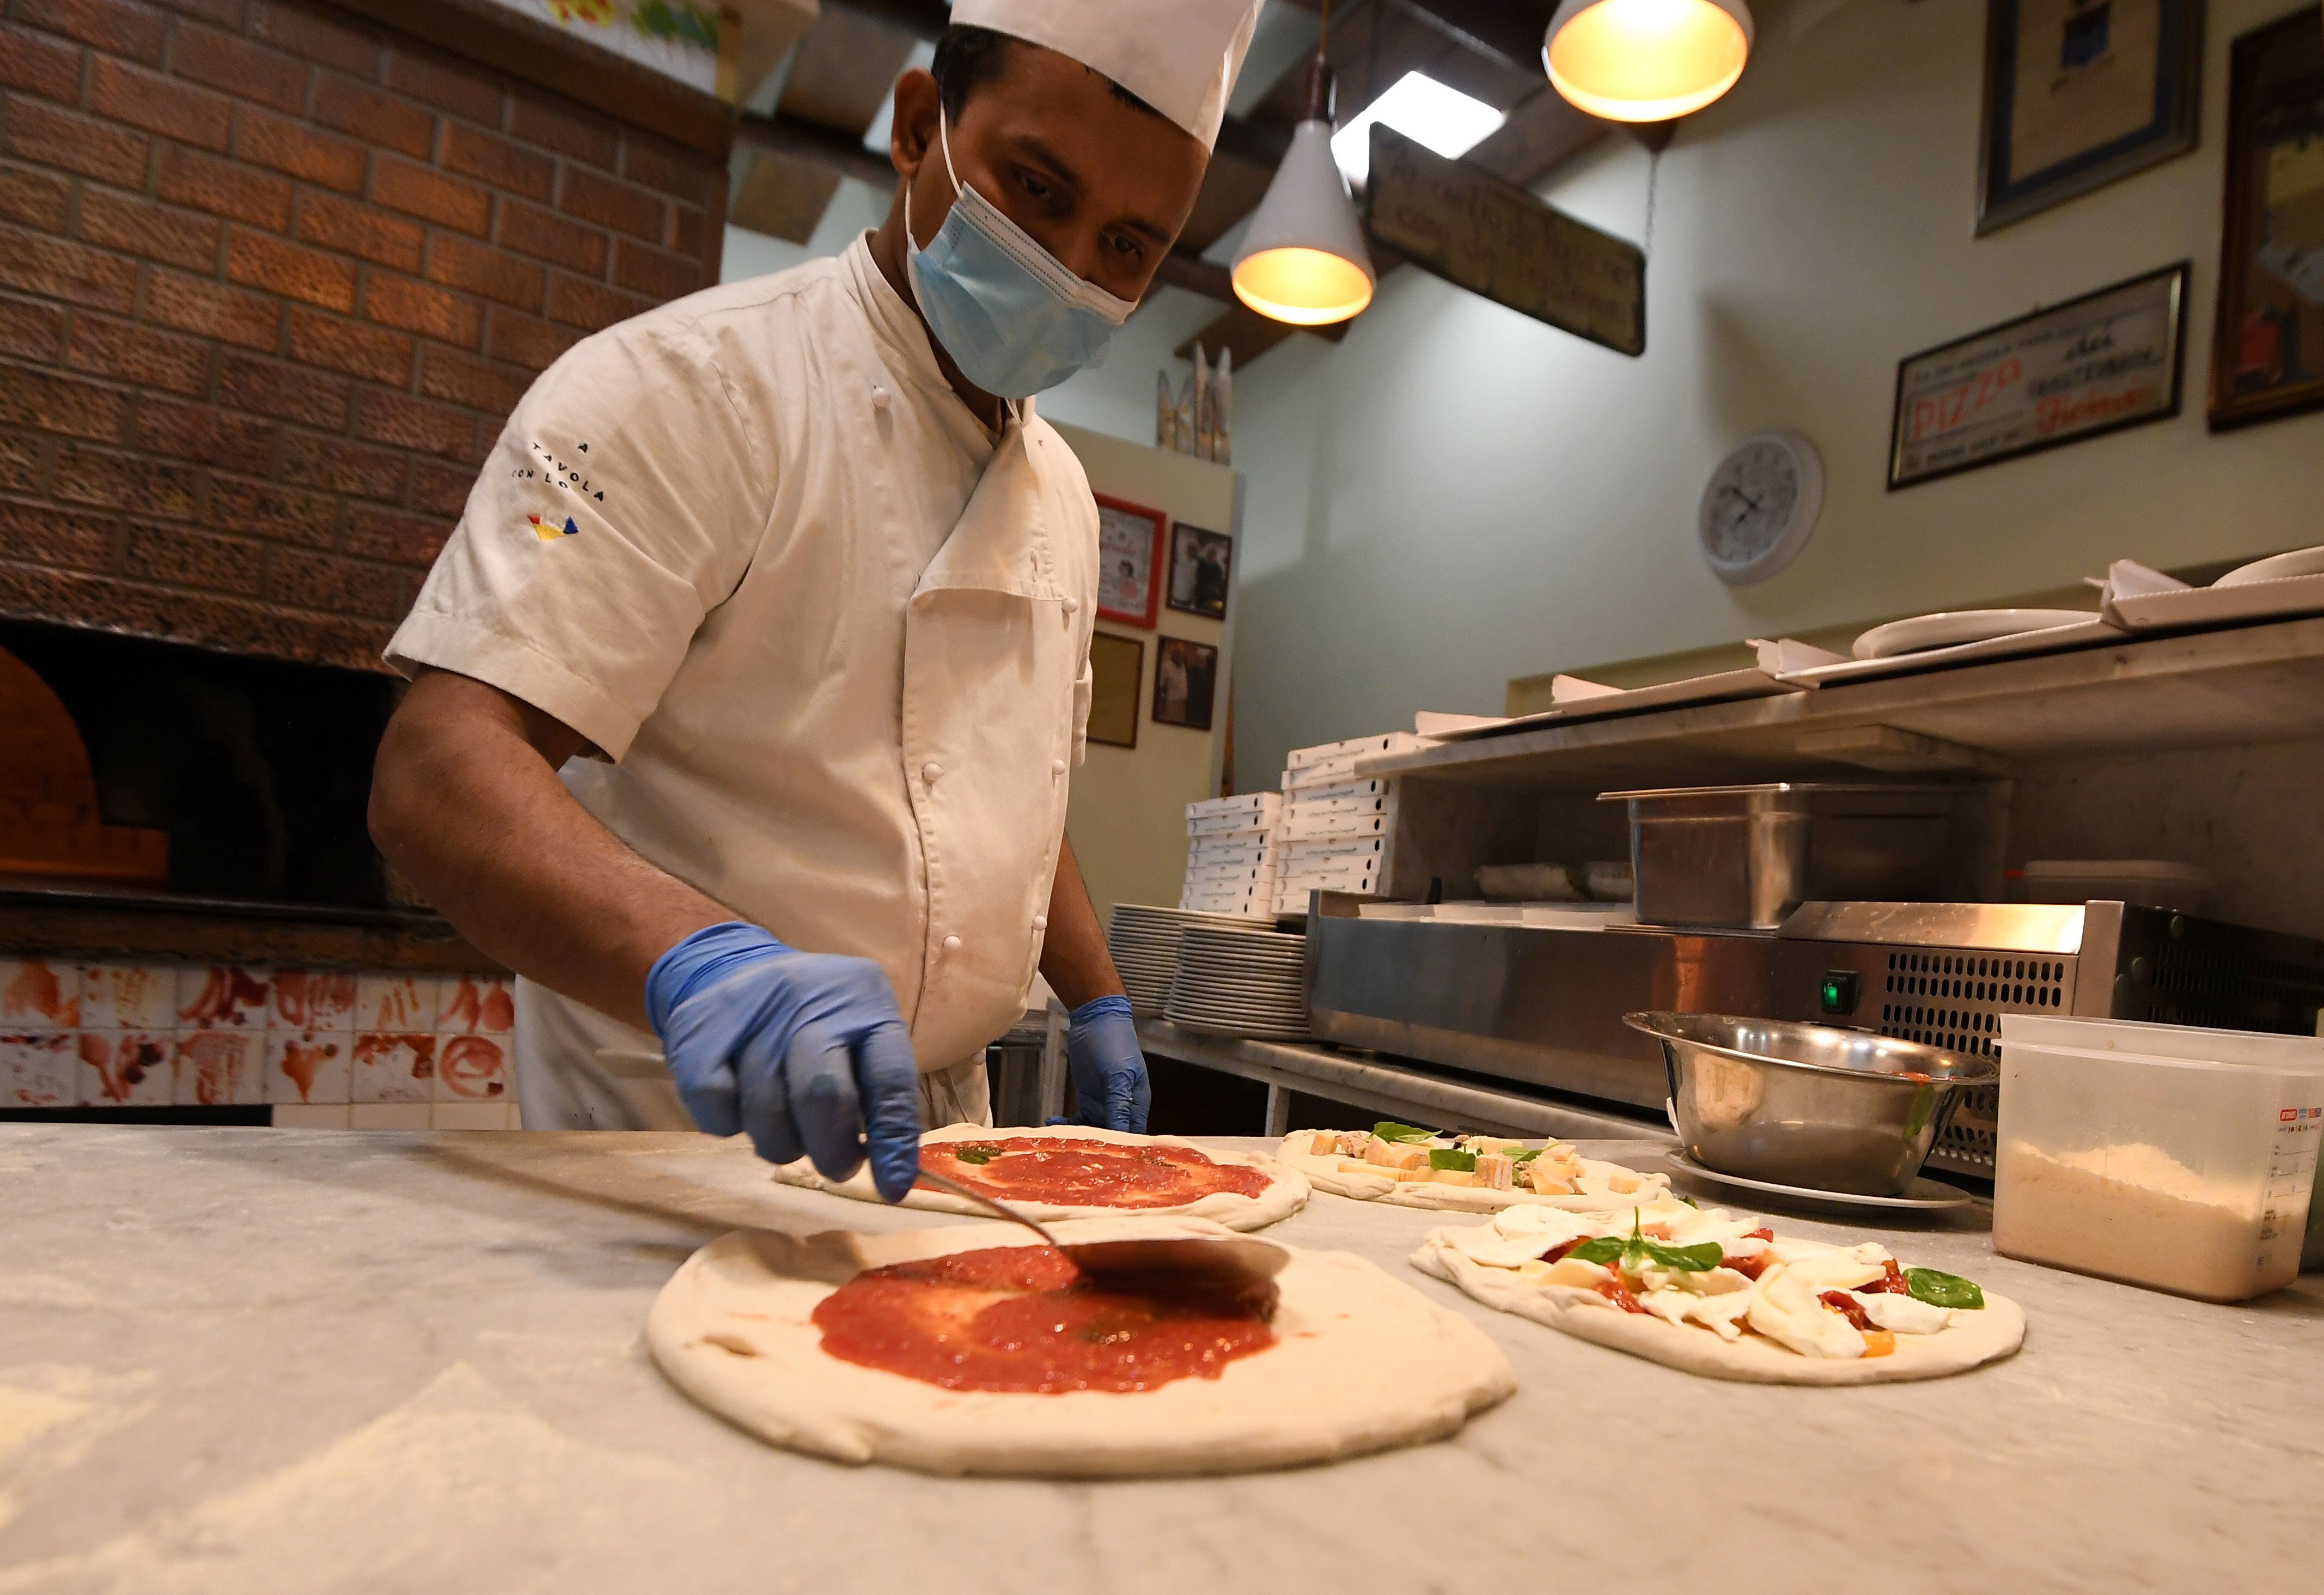 Feletti también se reunirá con representantes de propietarios de pizzerías (REUTERS/Alberto Lingria)